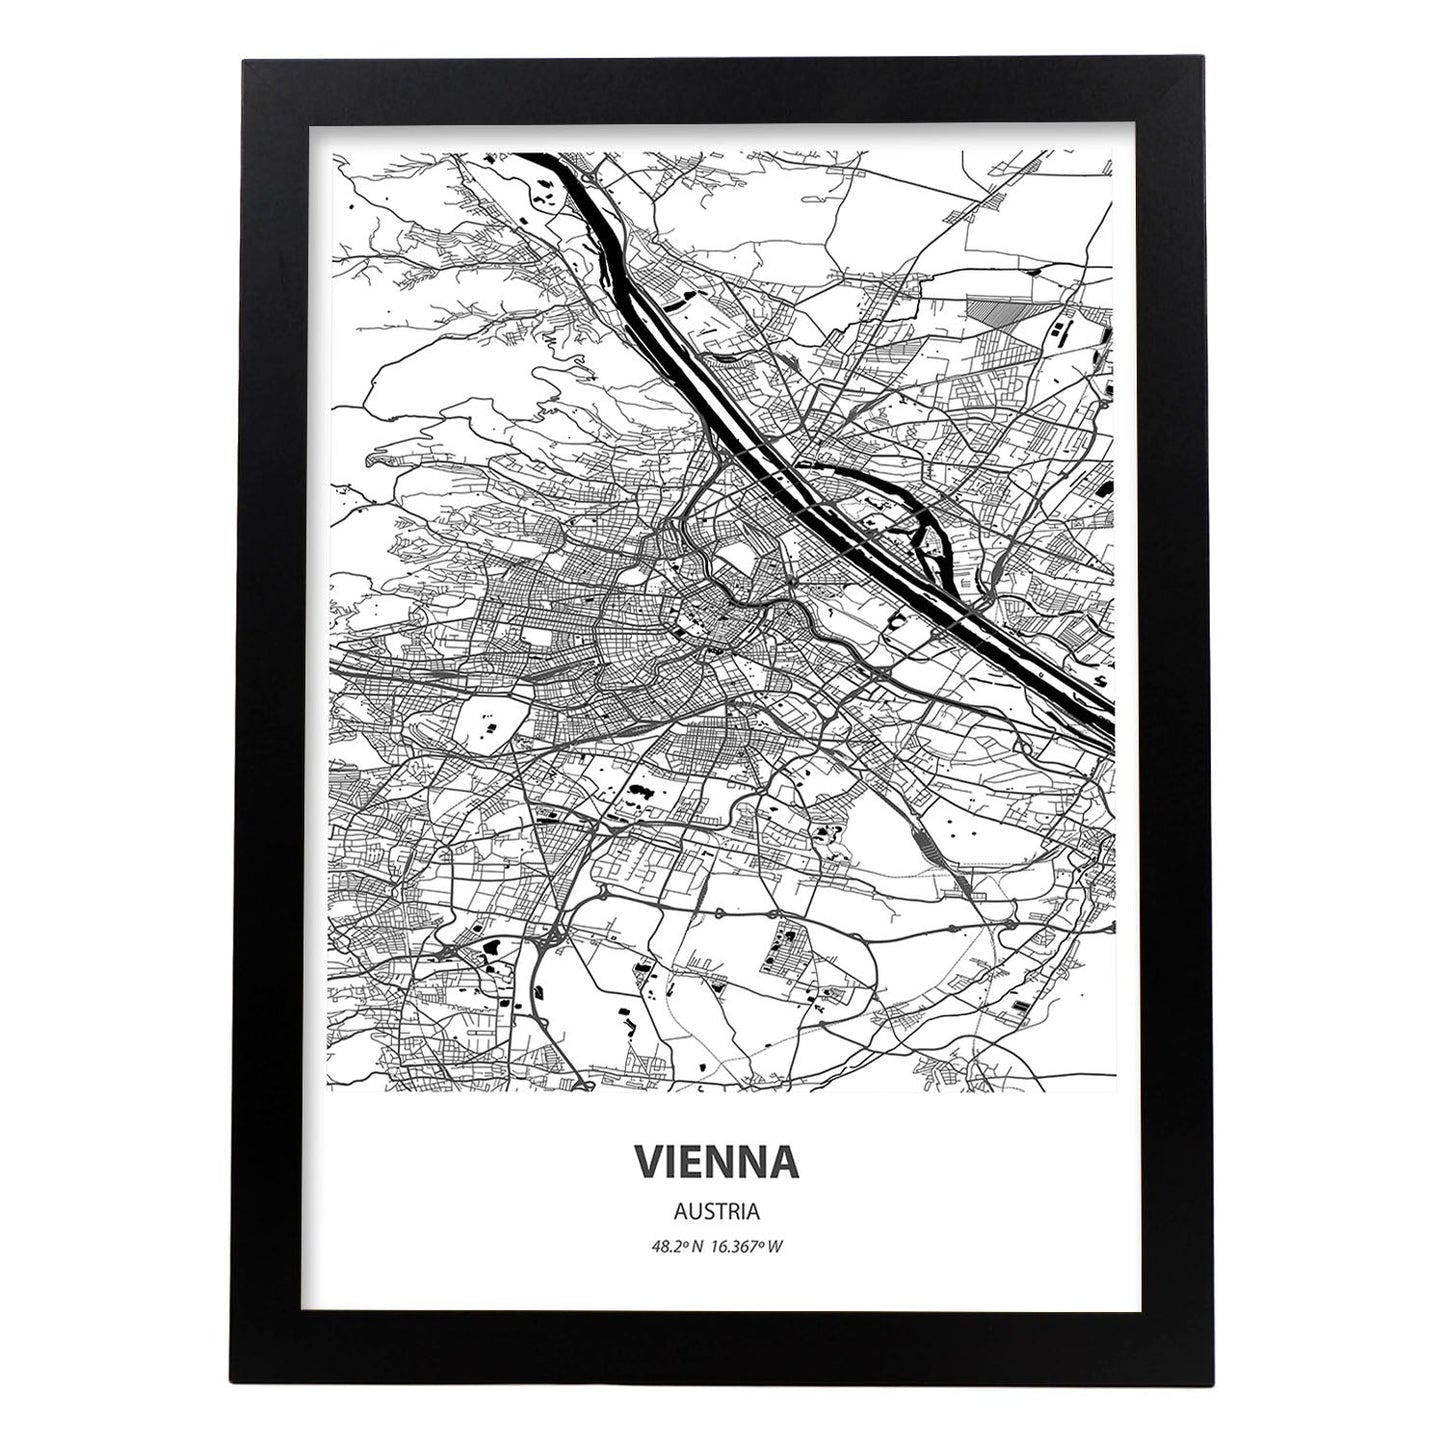 Poster con mapa de Vienna - Austria. Láminas de ciudades de Europa con mares y ríos en color negro.-Artwork-Nacnic-A4-Marco Negro-Nacnic Estudio SL